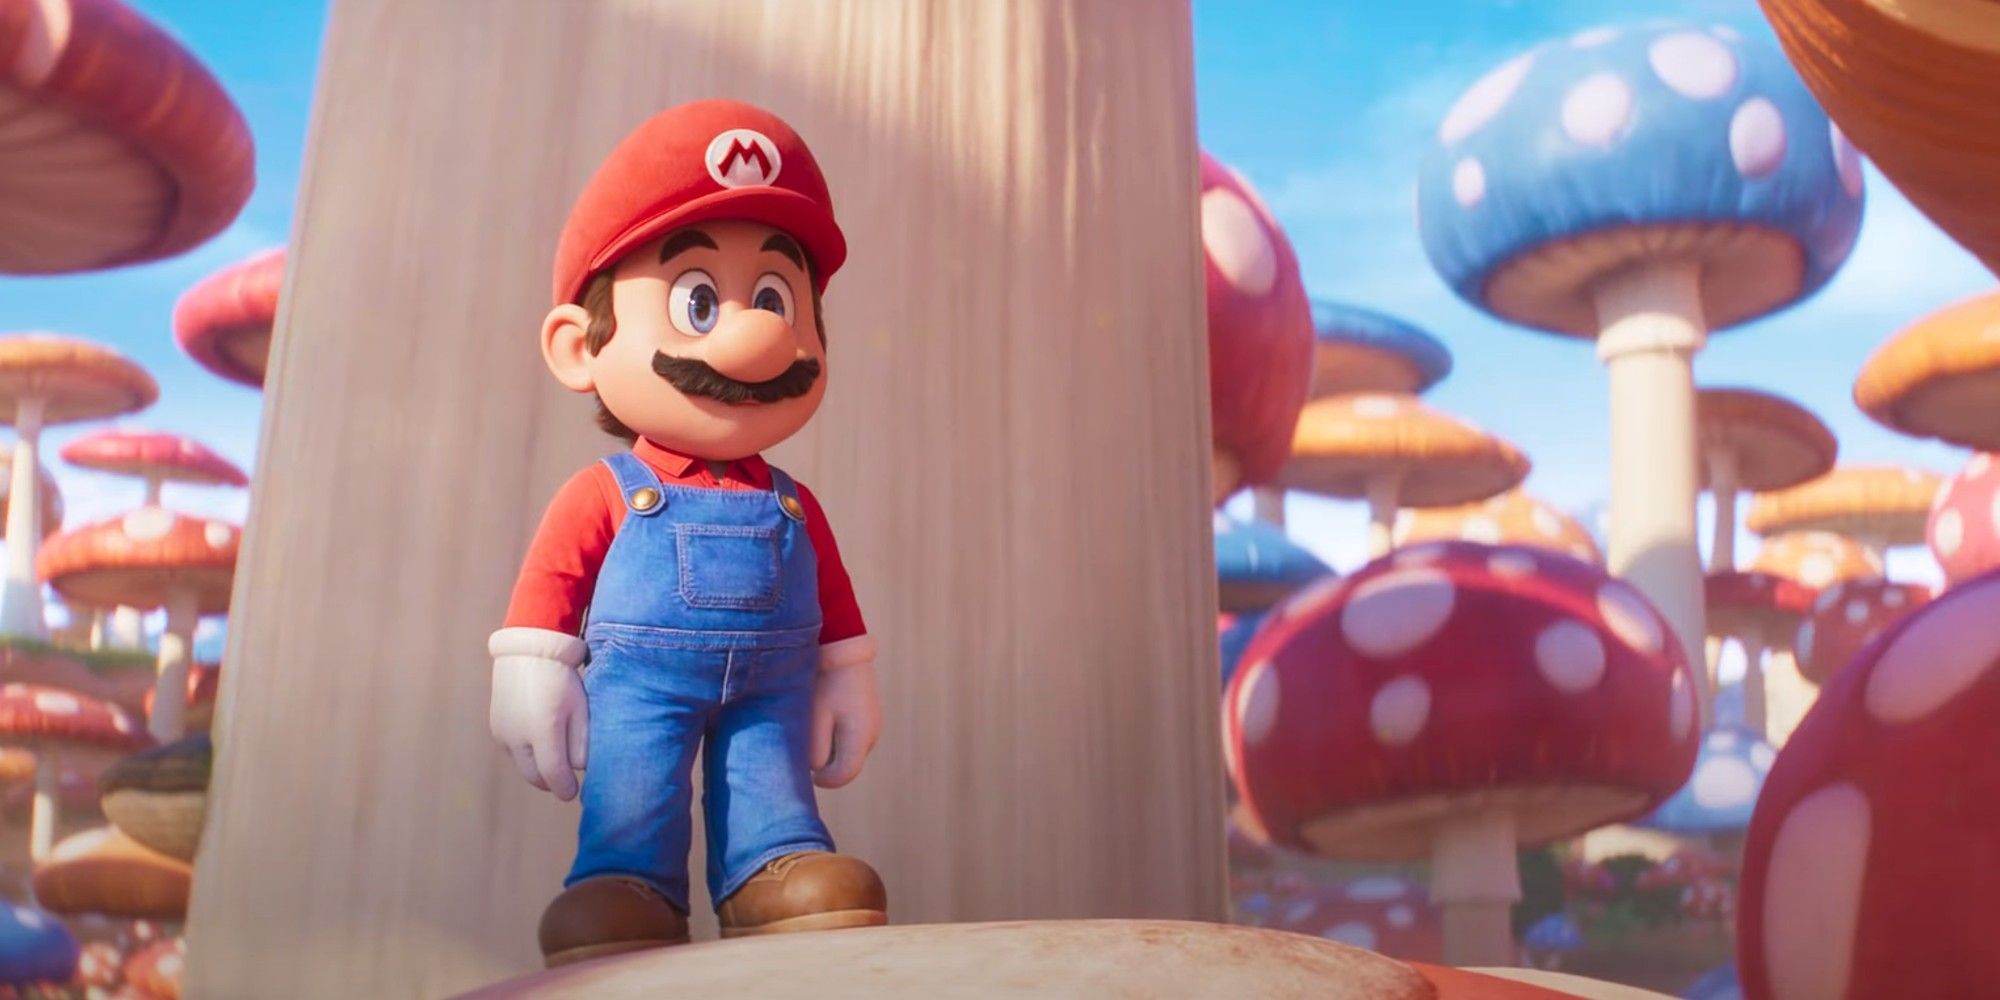 Illumination Super Mario Bros. Chris Pratt as Mario in the Giant Mushroom Forest